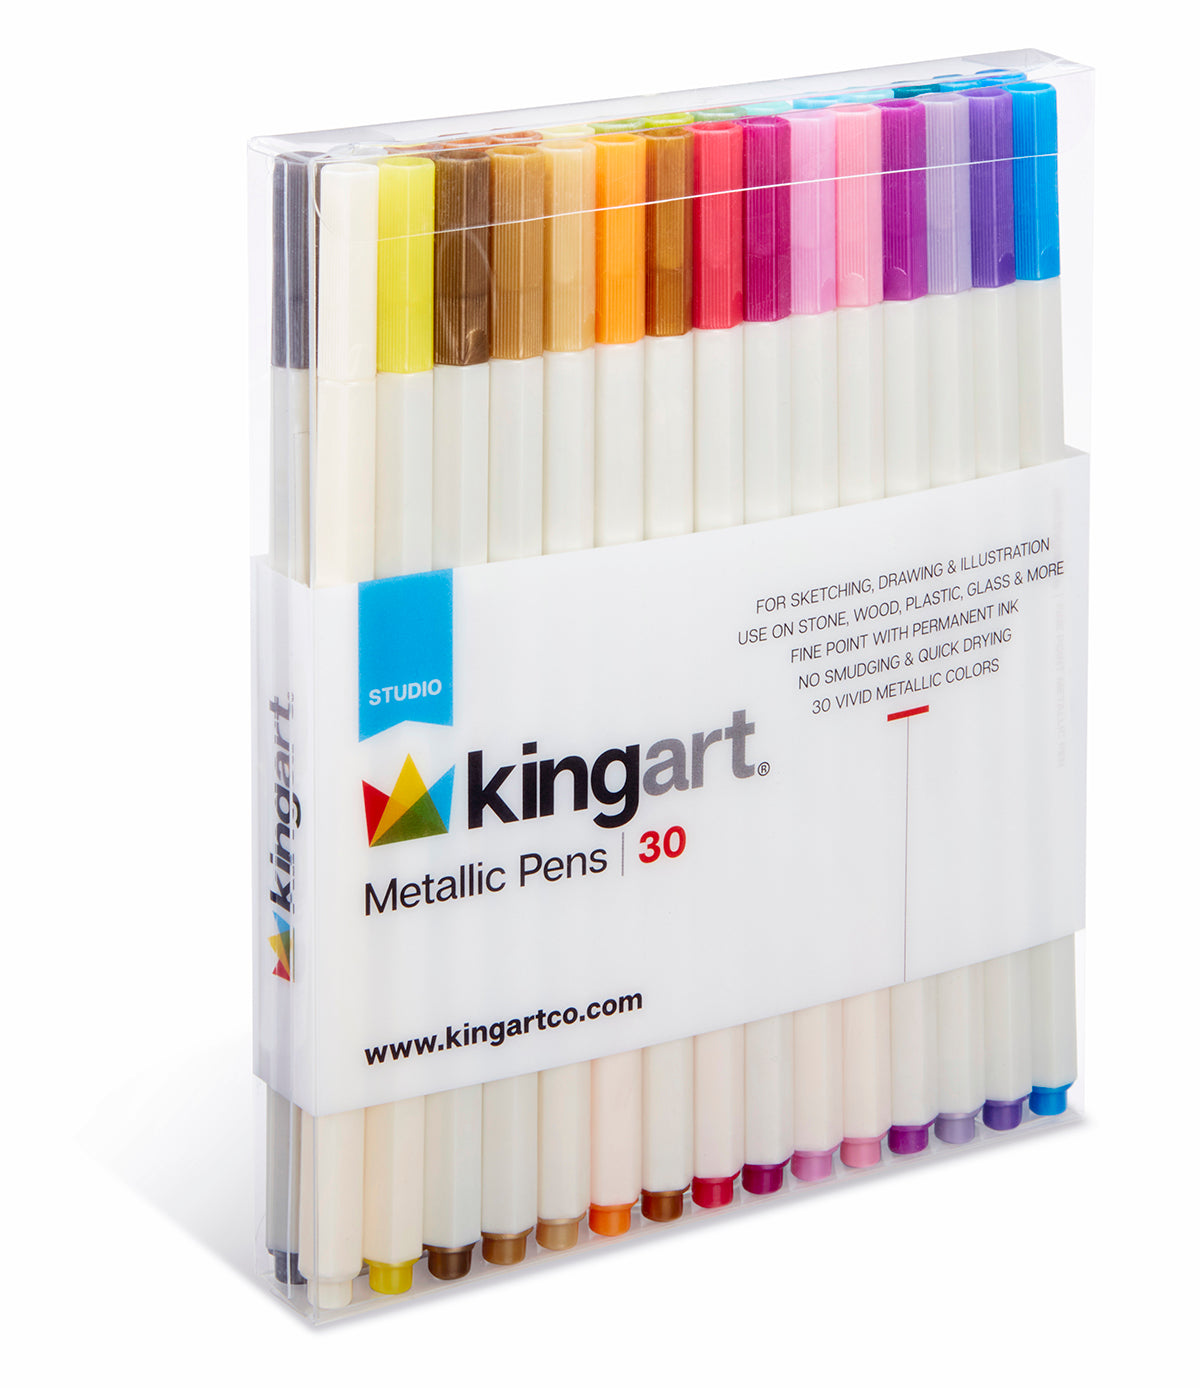 KINGART® Chisel & Fine Tip Markers, Travel Storage Case, Set of 12 Colors